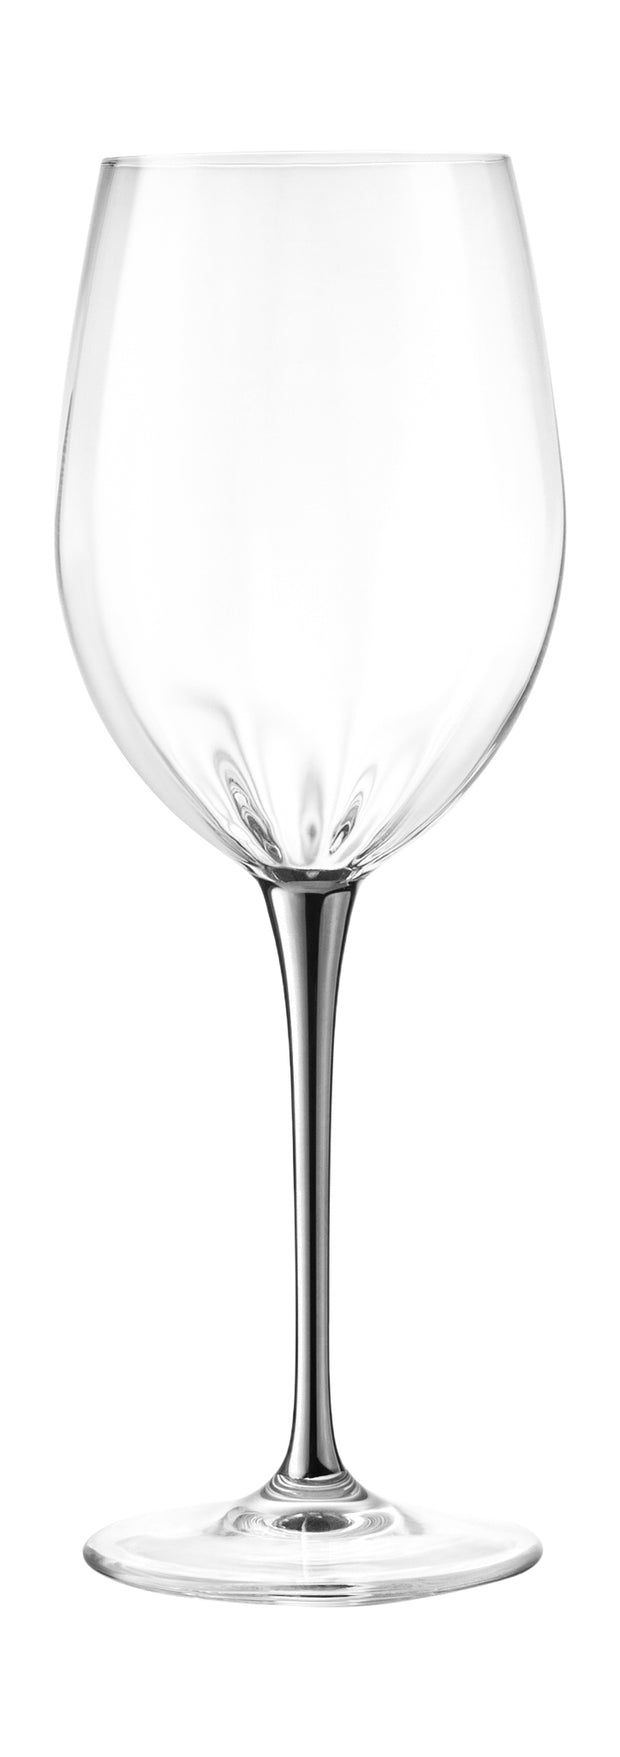 Spectrum White Wine with Platinum Stem, 14 oz. Set of 6